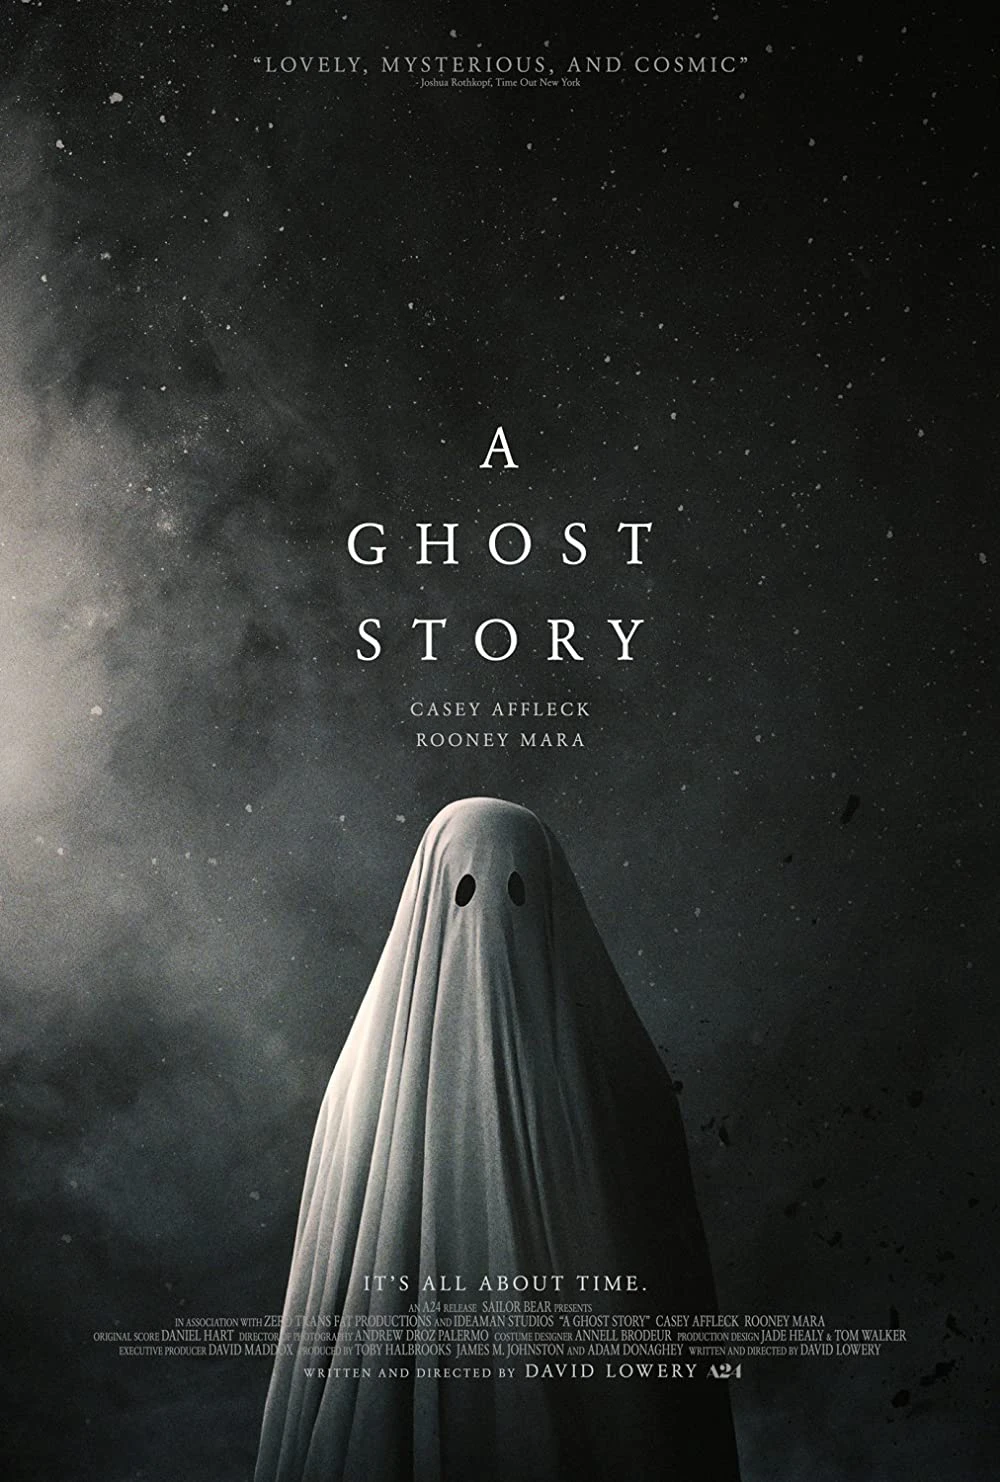 Một Câu Chuyện Ma | A Ghost Story (2017)